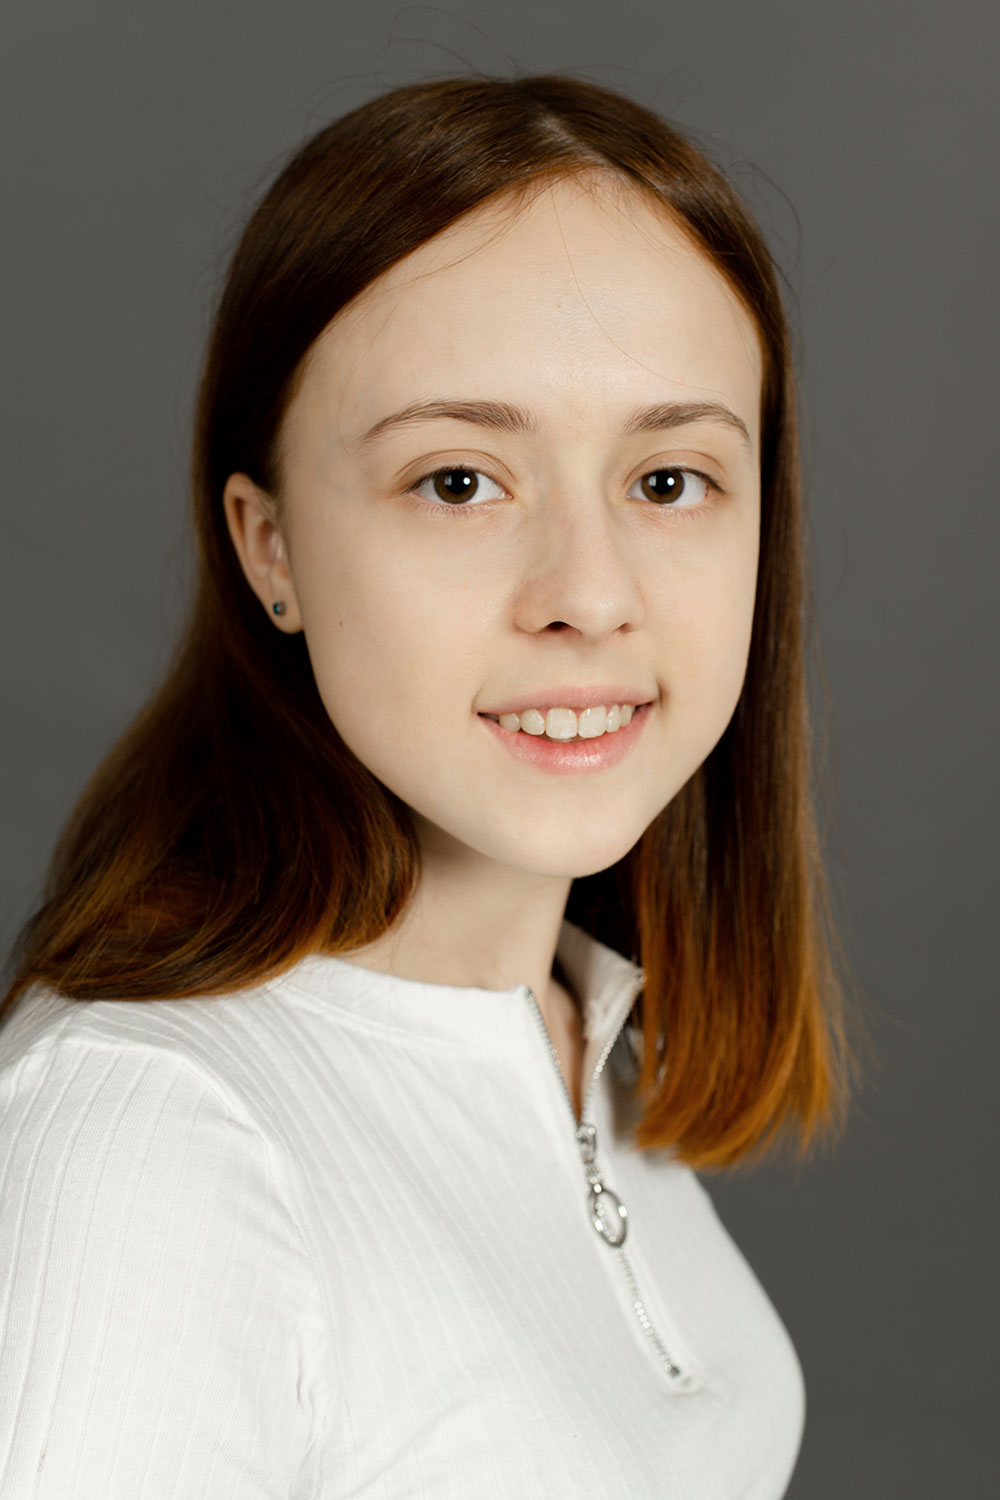 Агрова Елизавета 16 лет Юные актеры